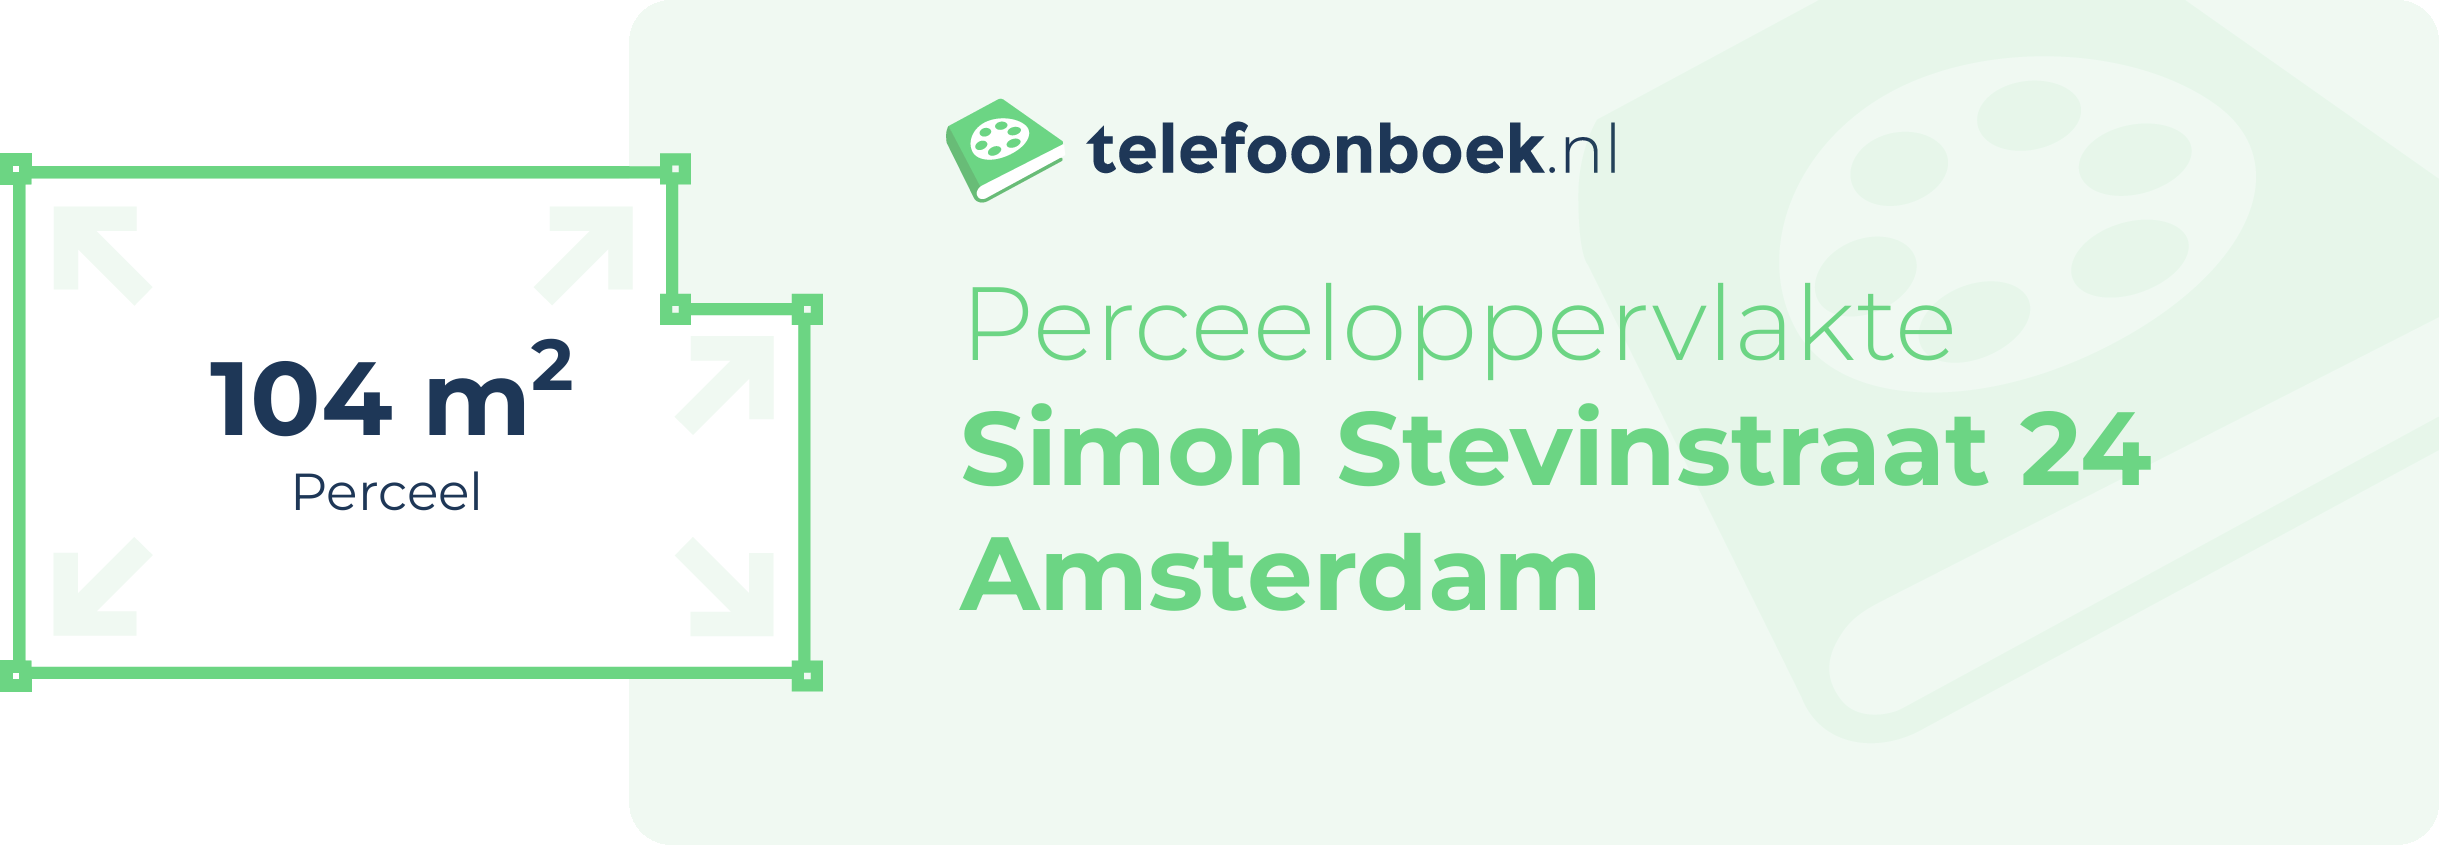 Perceeloppervlakte Simon Stevinstraat 24 Amsterdam